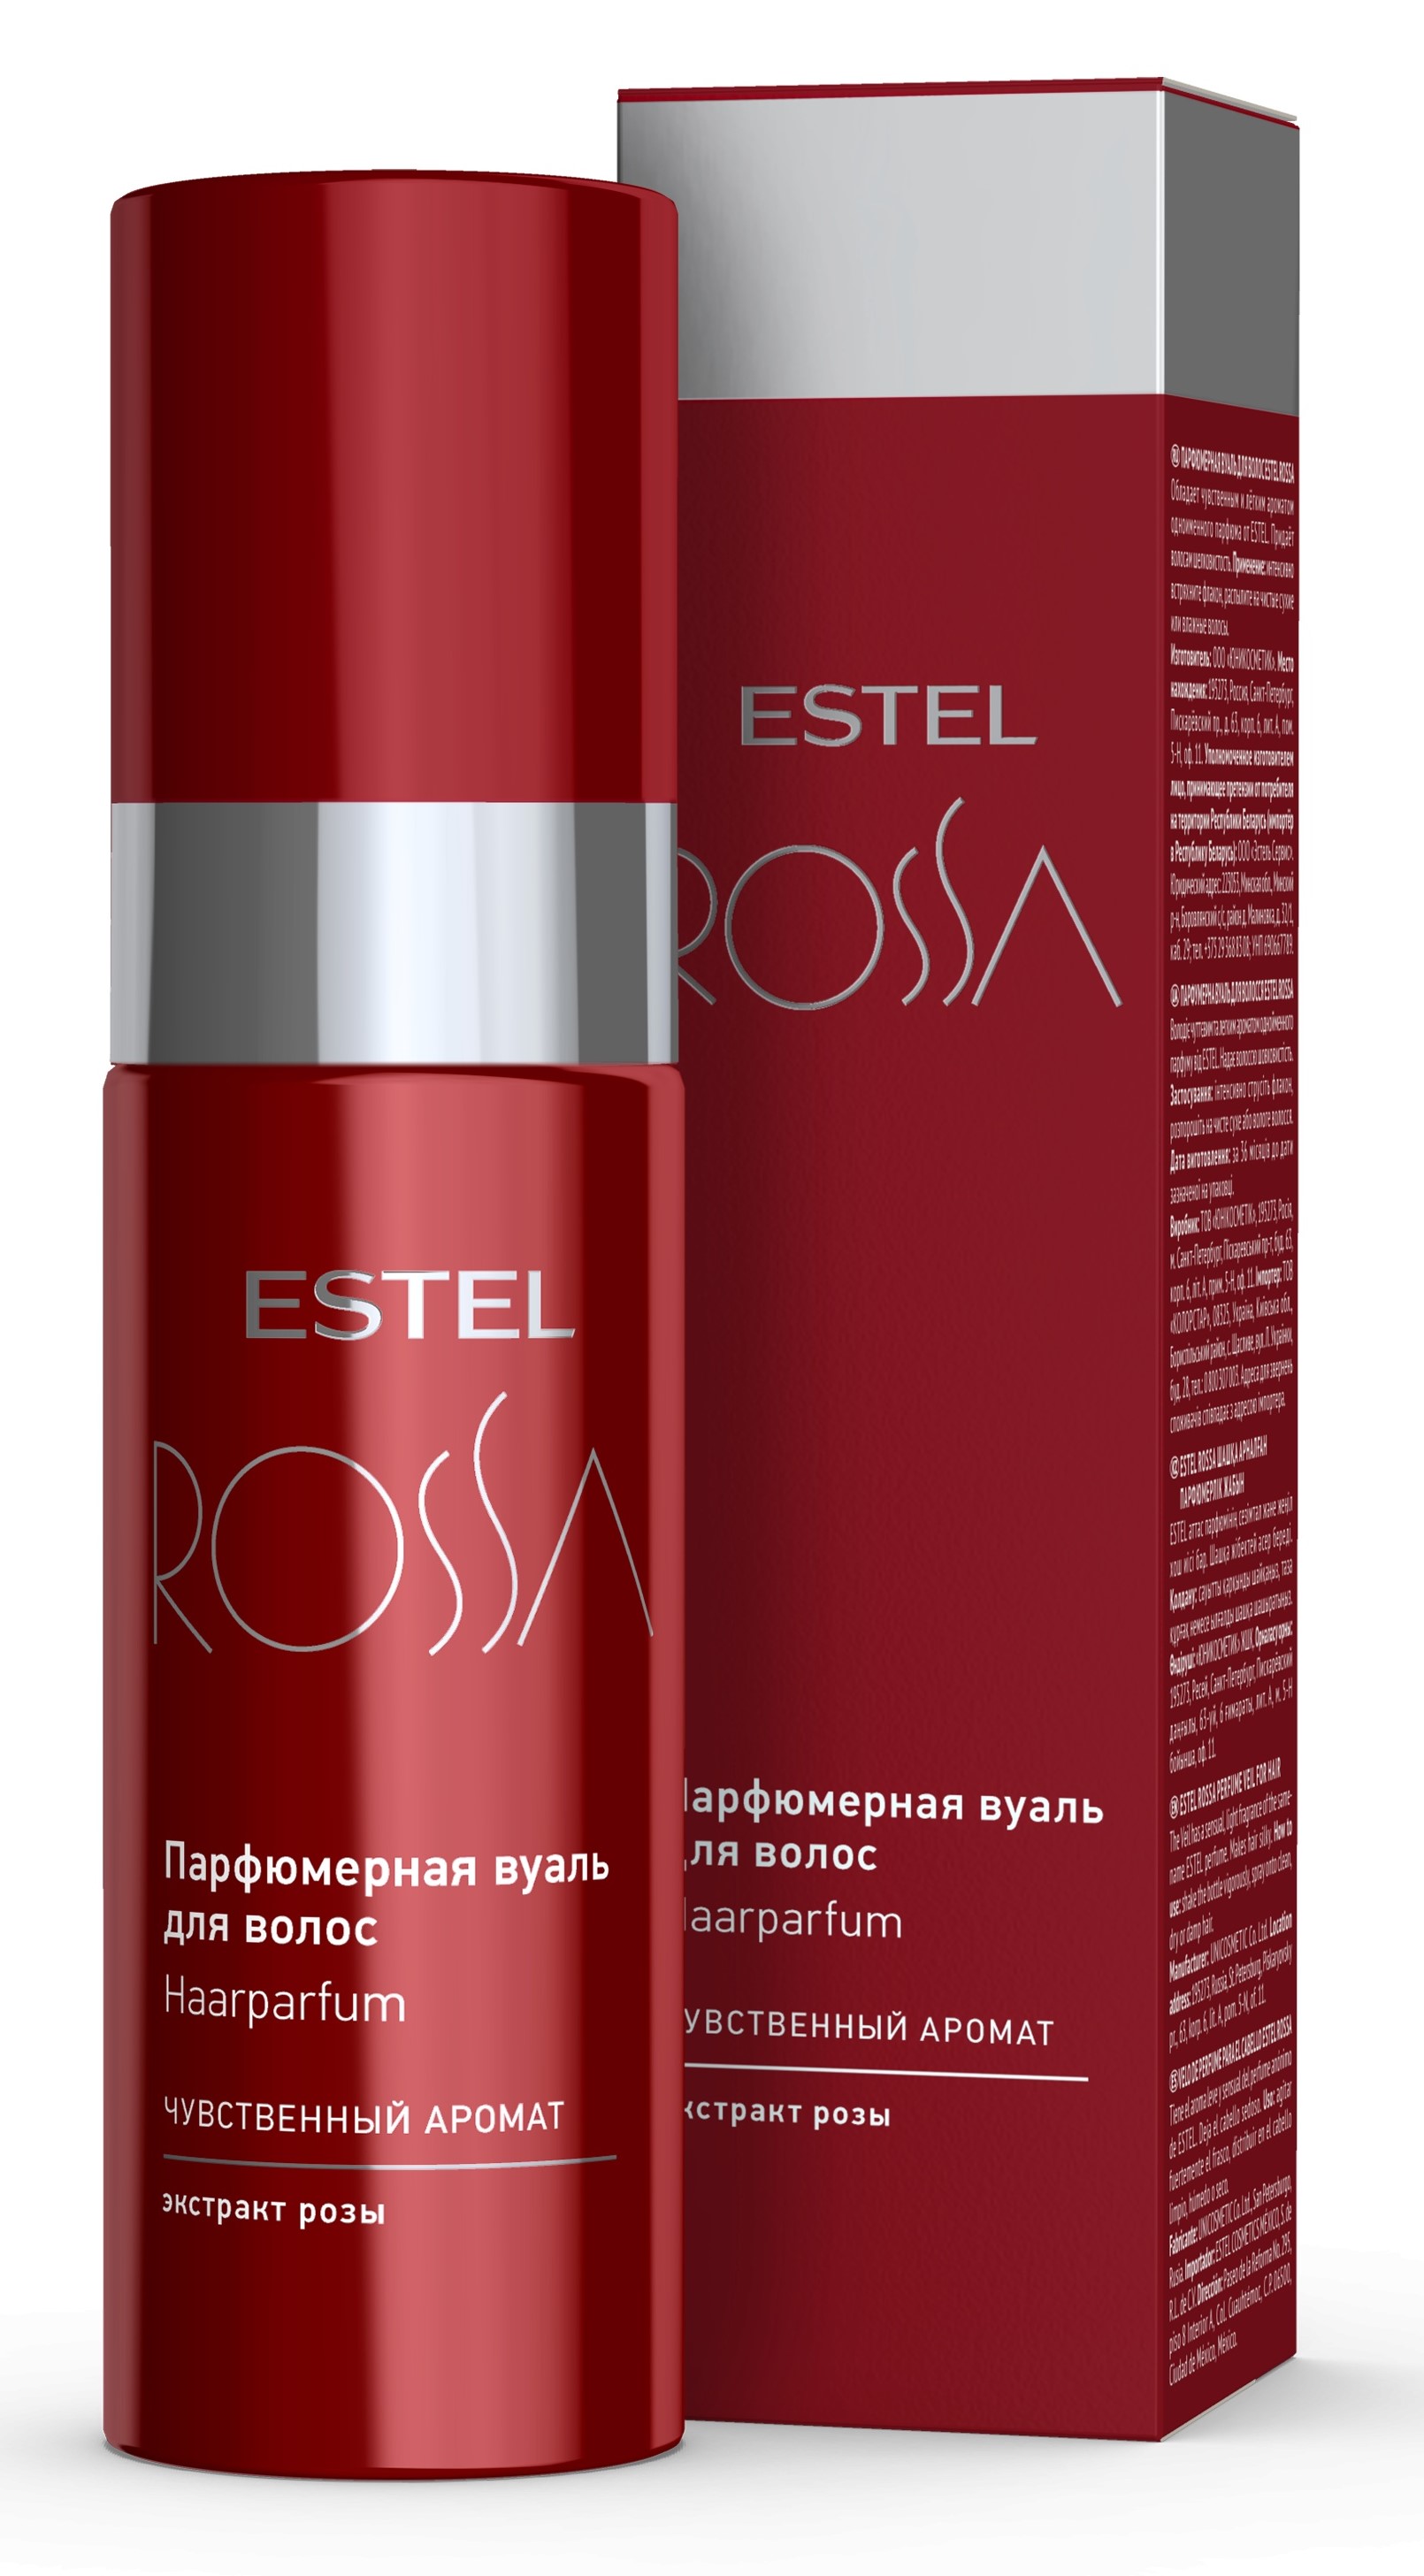 Estel Парфюмерная вуаль для волос, 100 мл (Estel, Rossa)